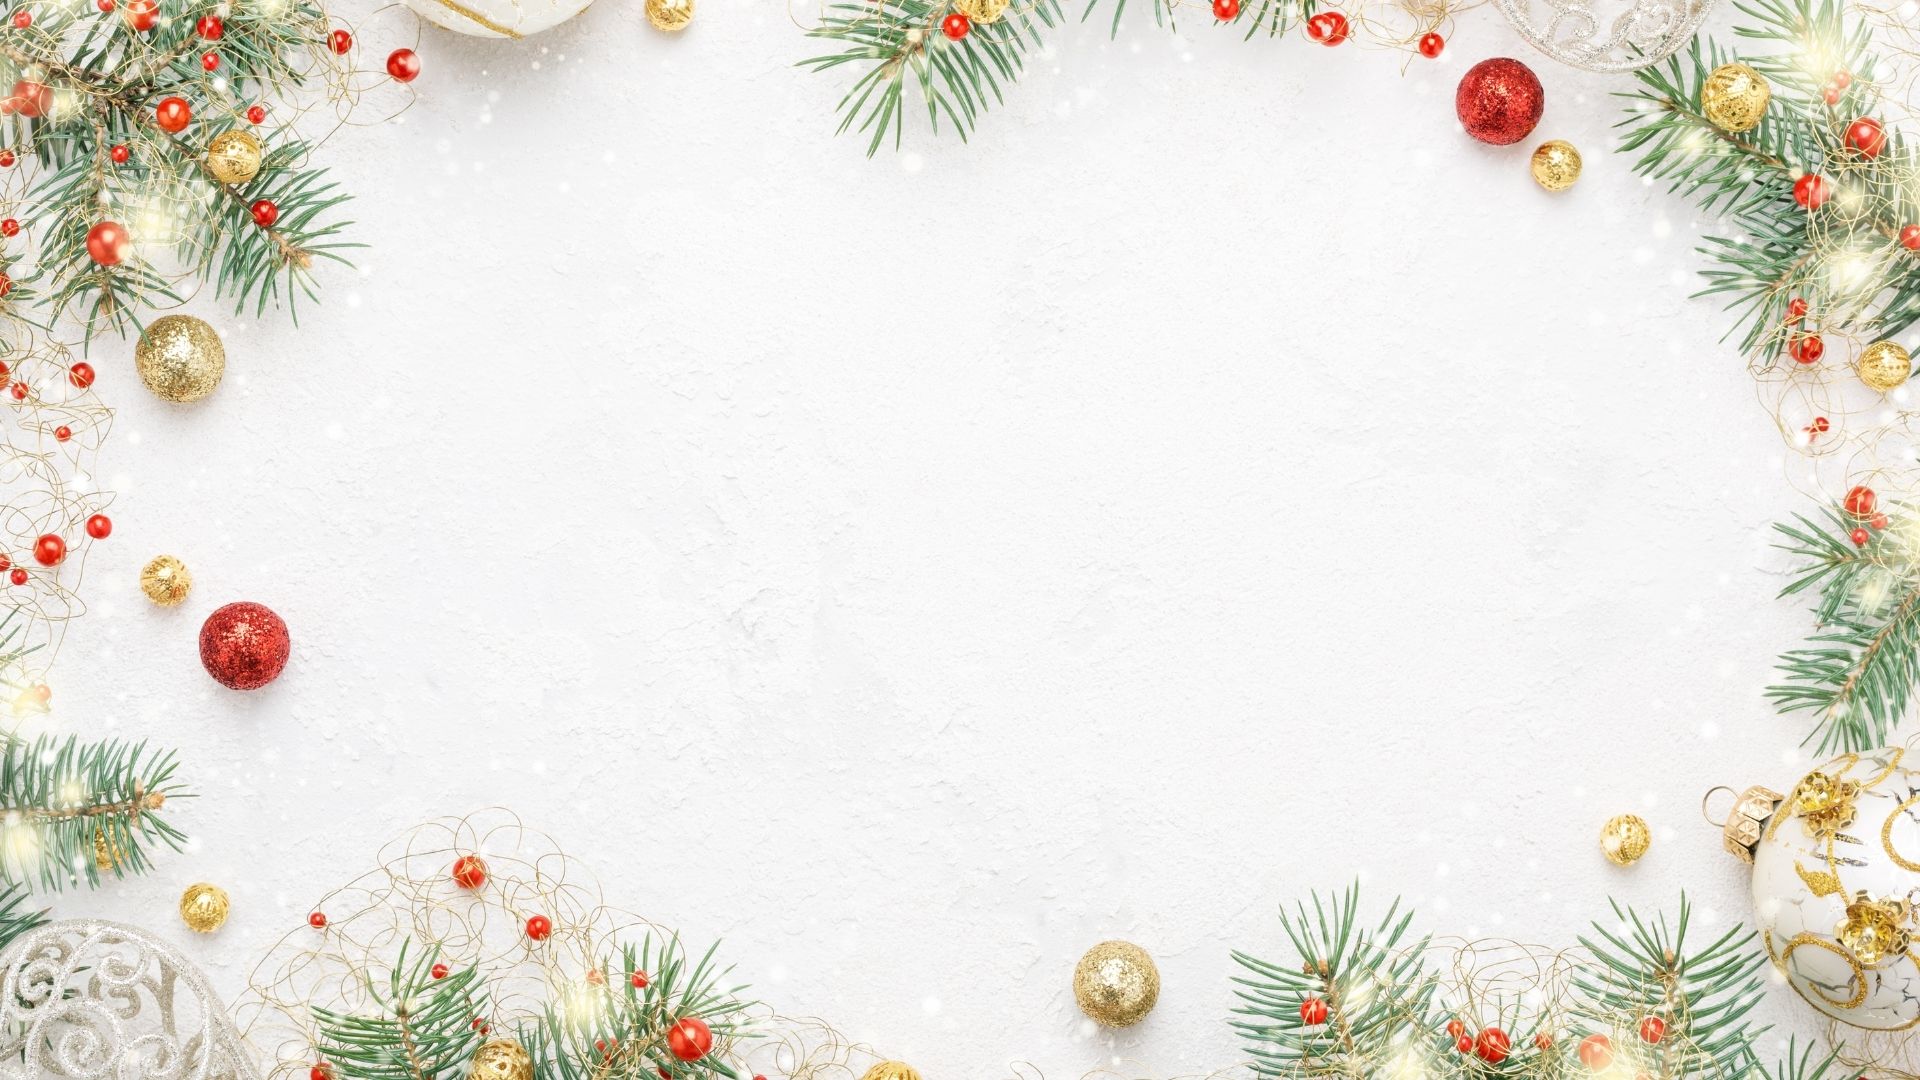 Imagem de fundo branco com margens decorativadas de elementos natalinos como bolas douradas e vermelhas.